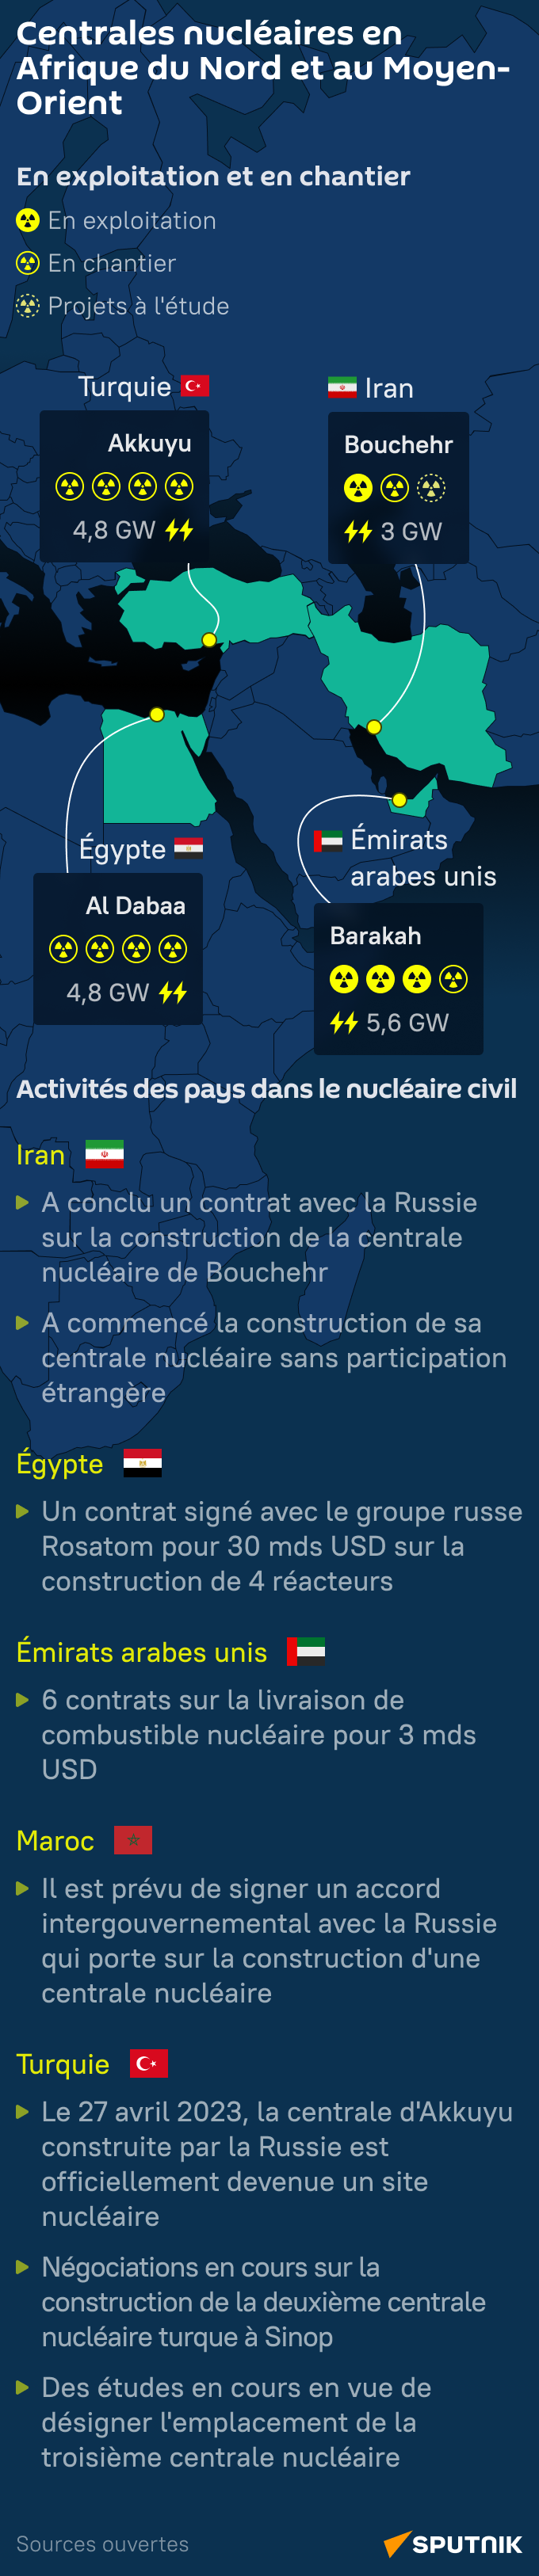 Centrales nucléaires en Afrique du Nord et au Moyen-Orient - Sputnik Afrique